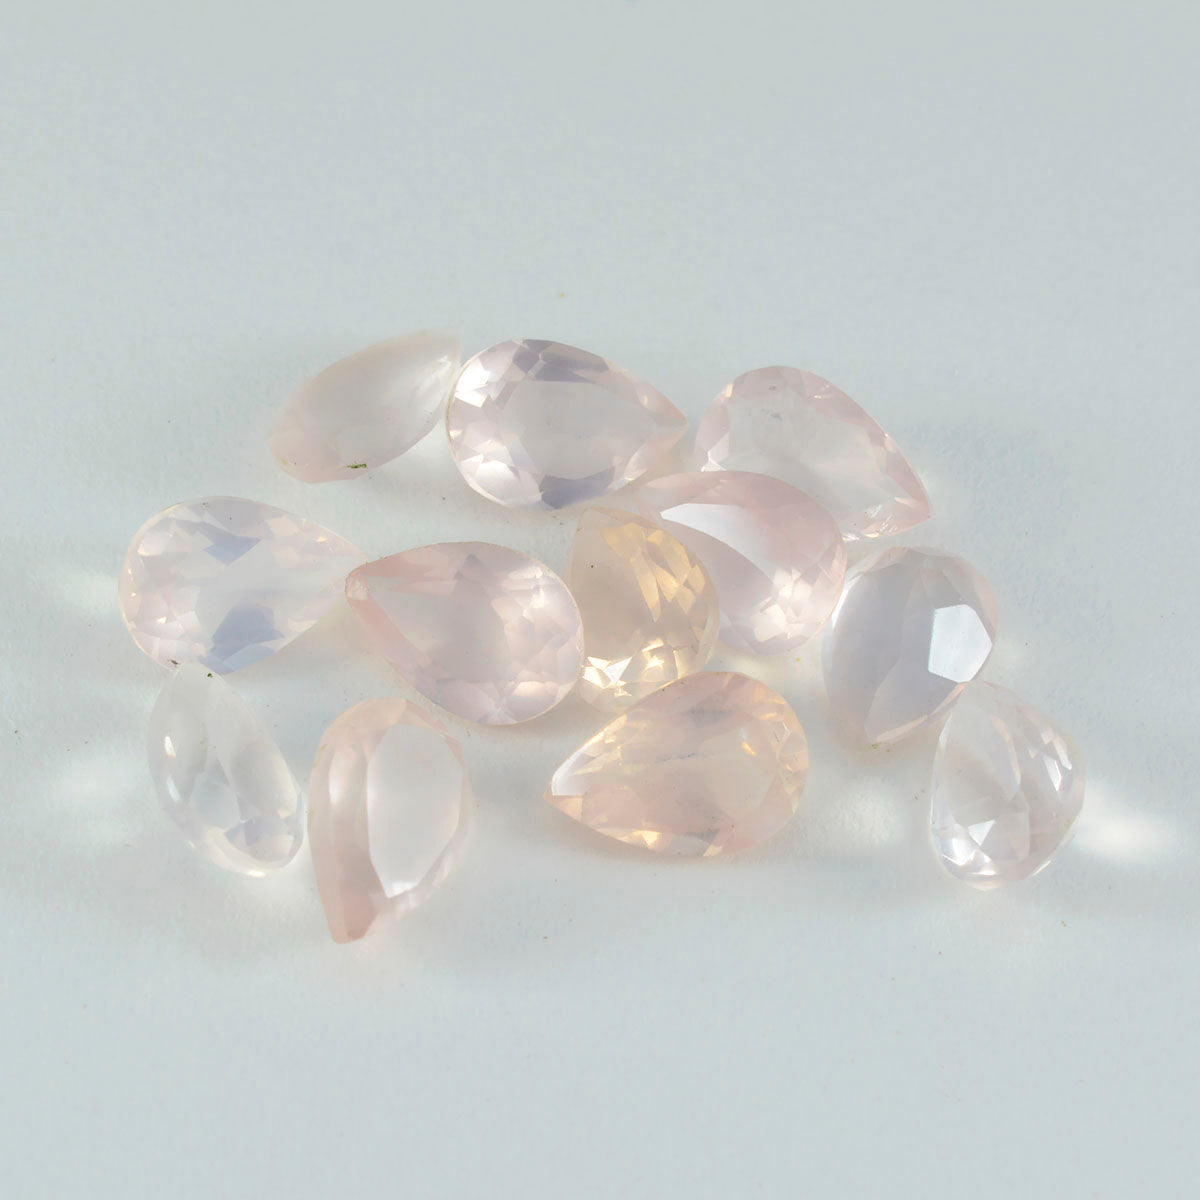 riyogems 1 шт. розовый кварц ограненный 6x9 мм драгоценный камень грушевидной формы потрясающего качества